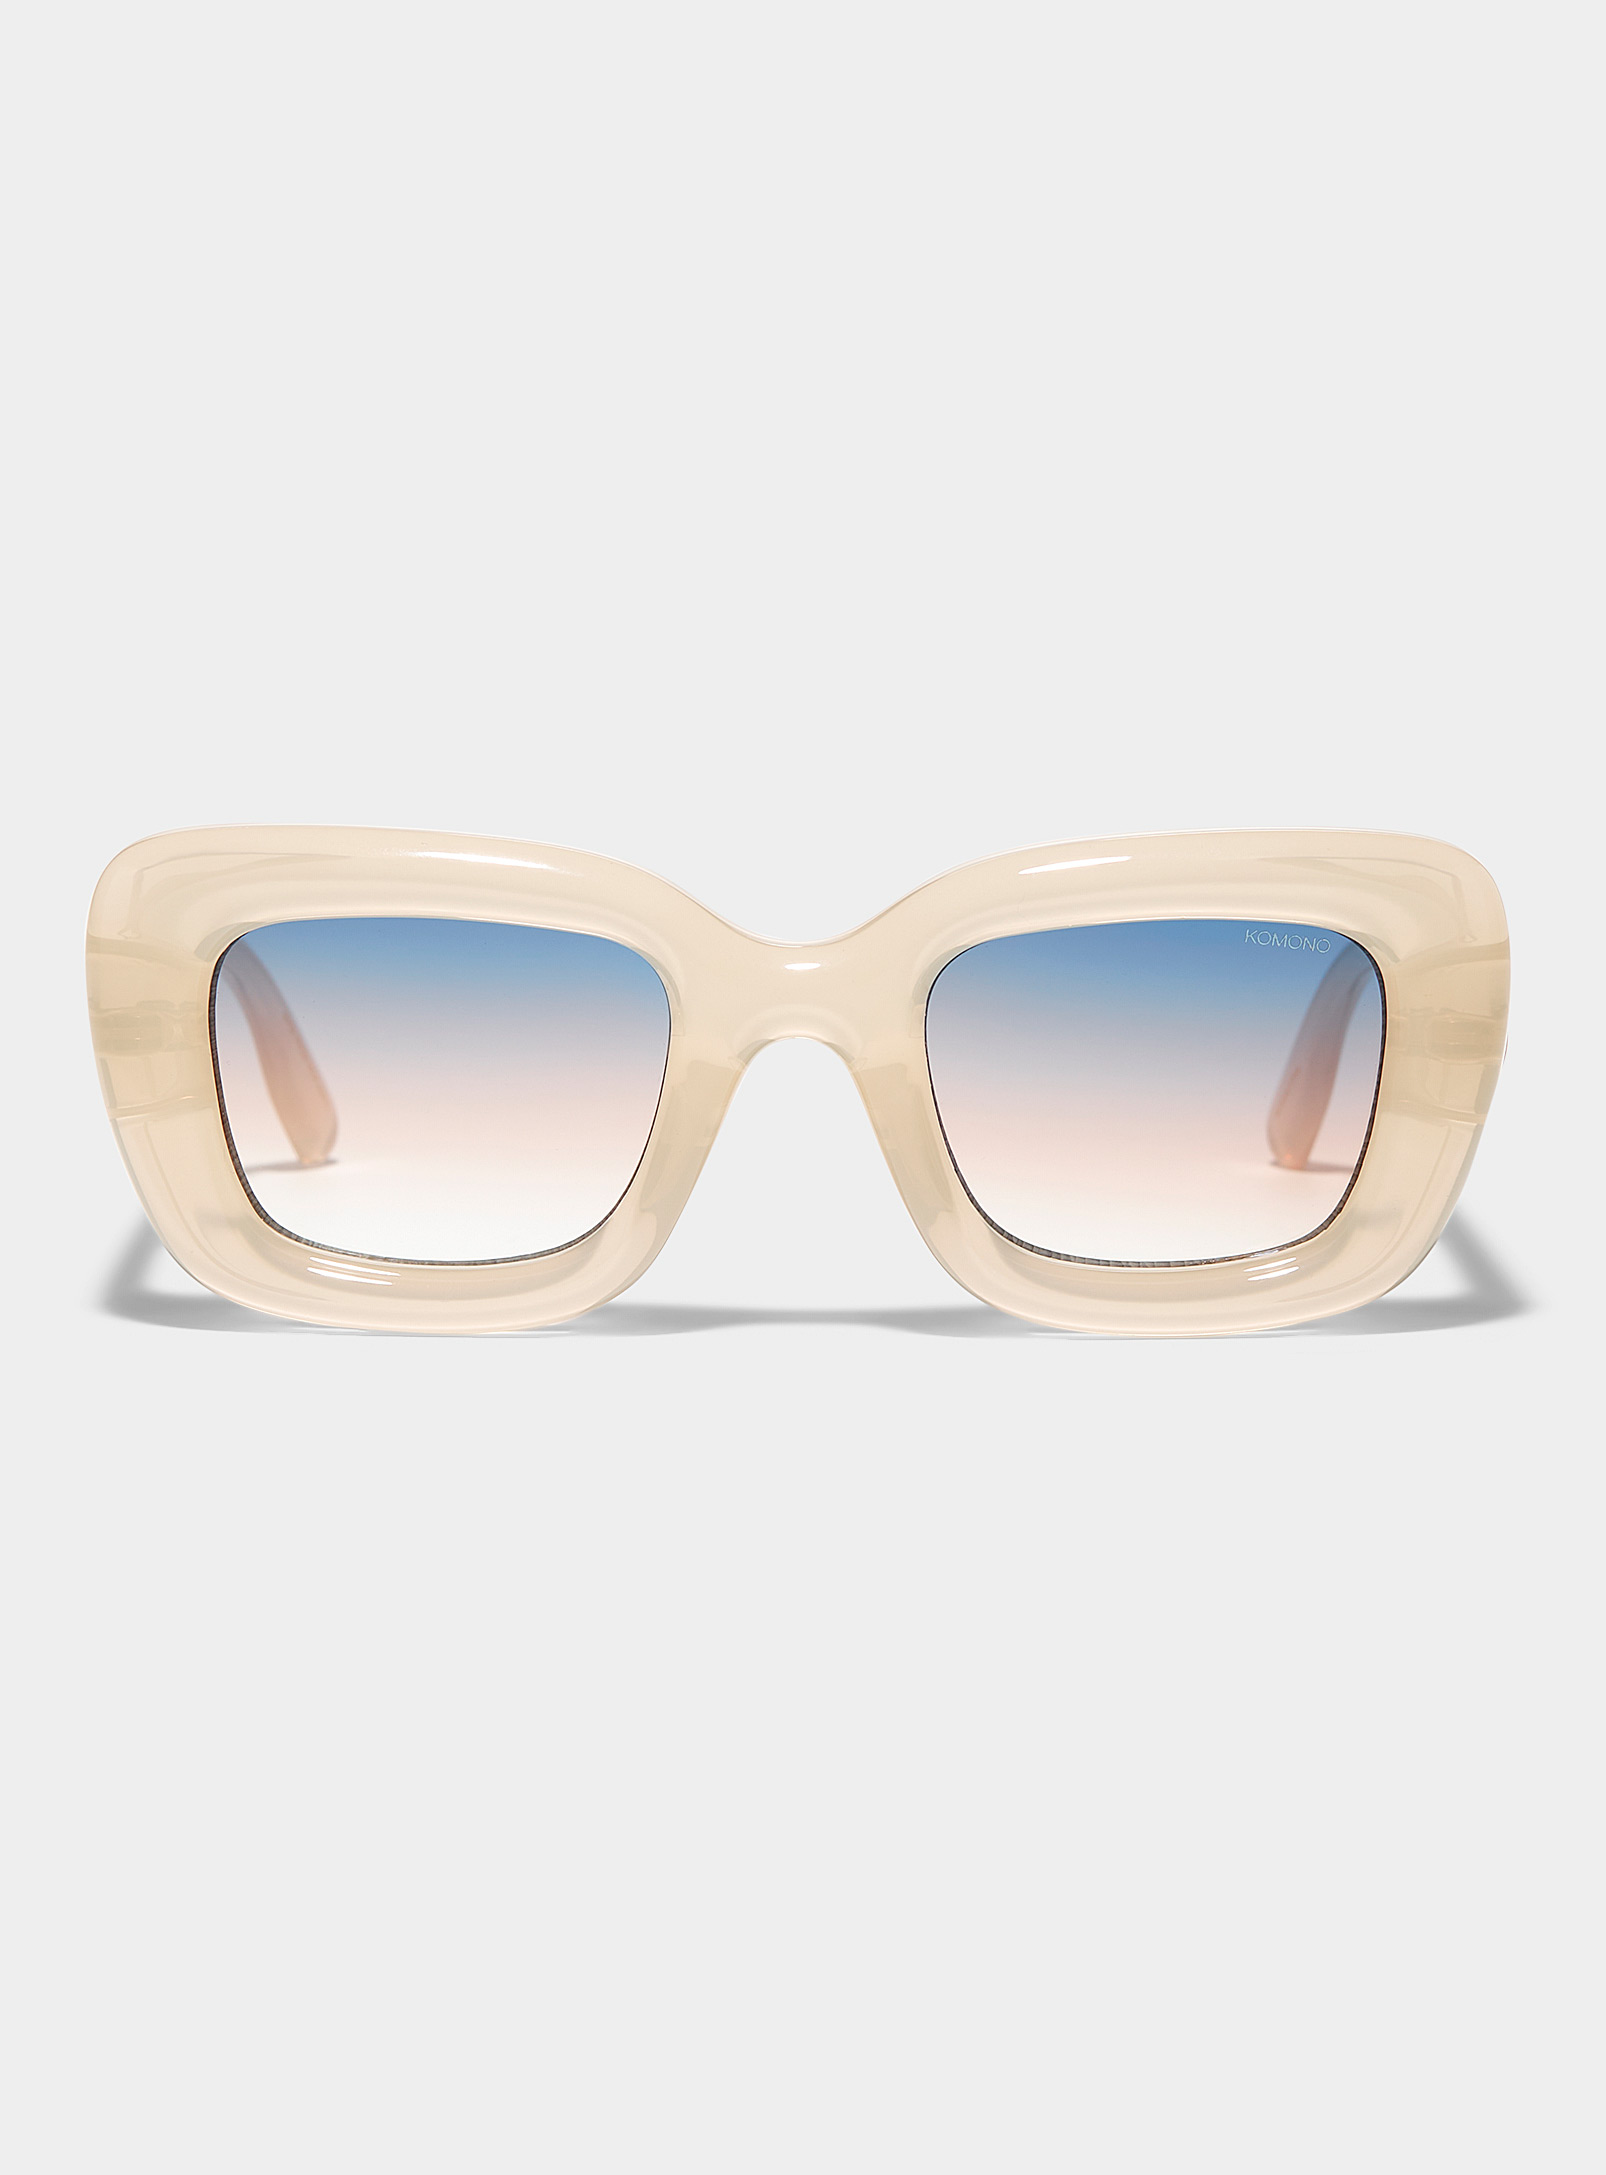 KOMONO - Les lunettes de soleil carrées Vita